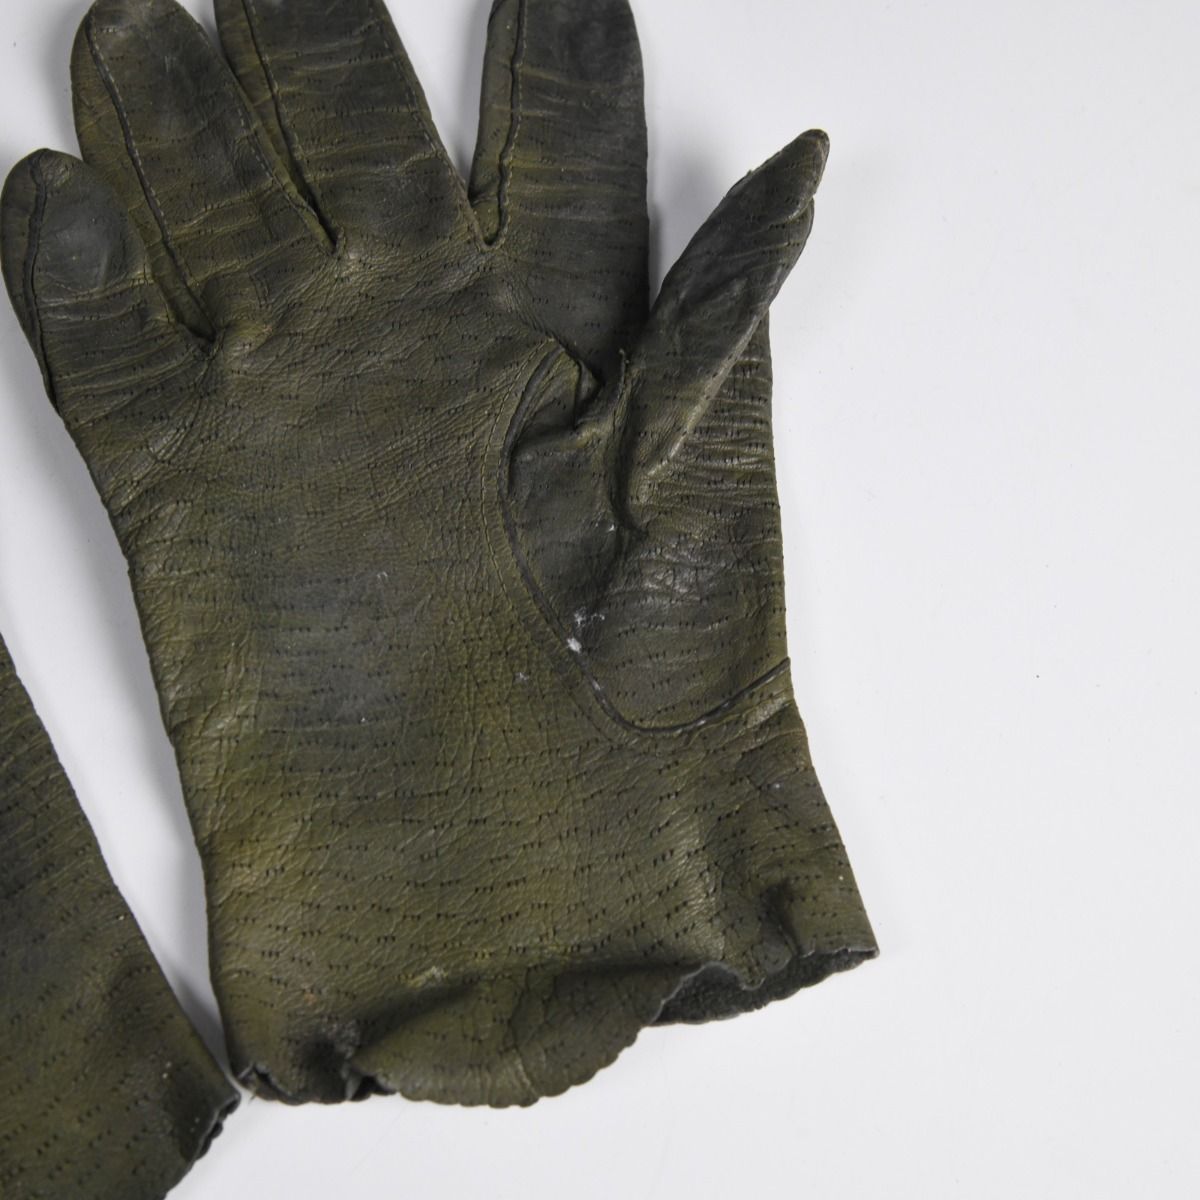 Vintage Leather Gloves 